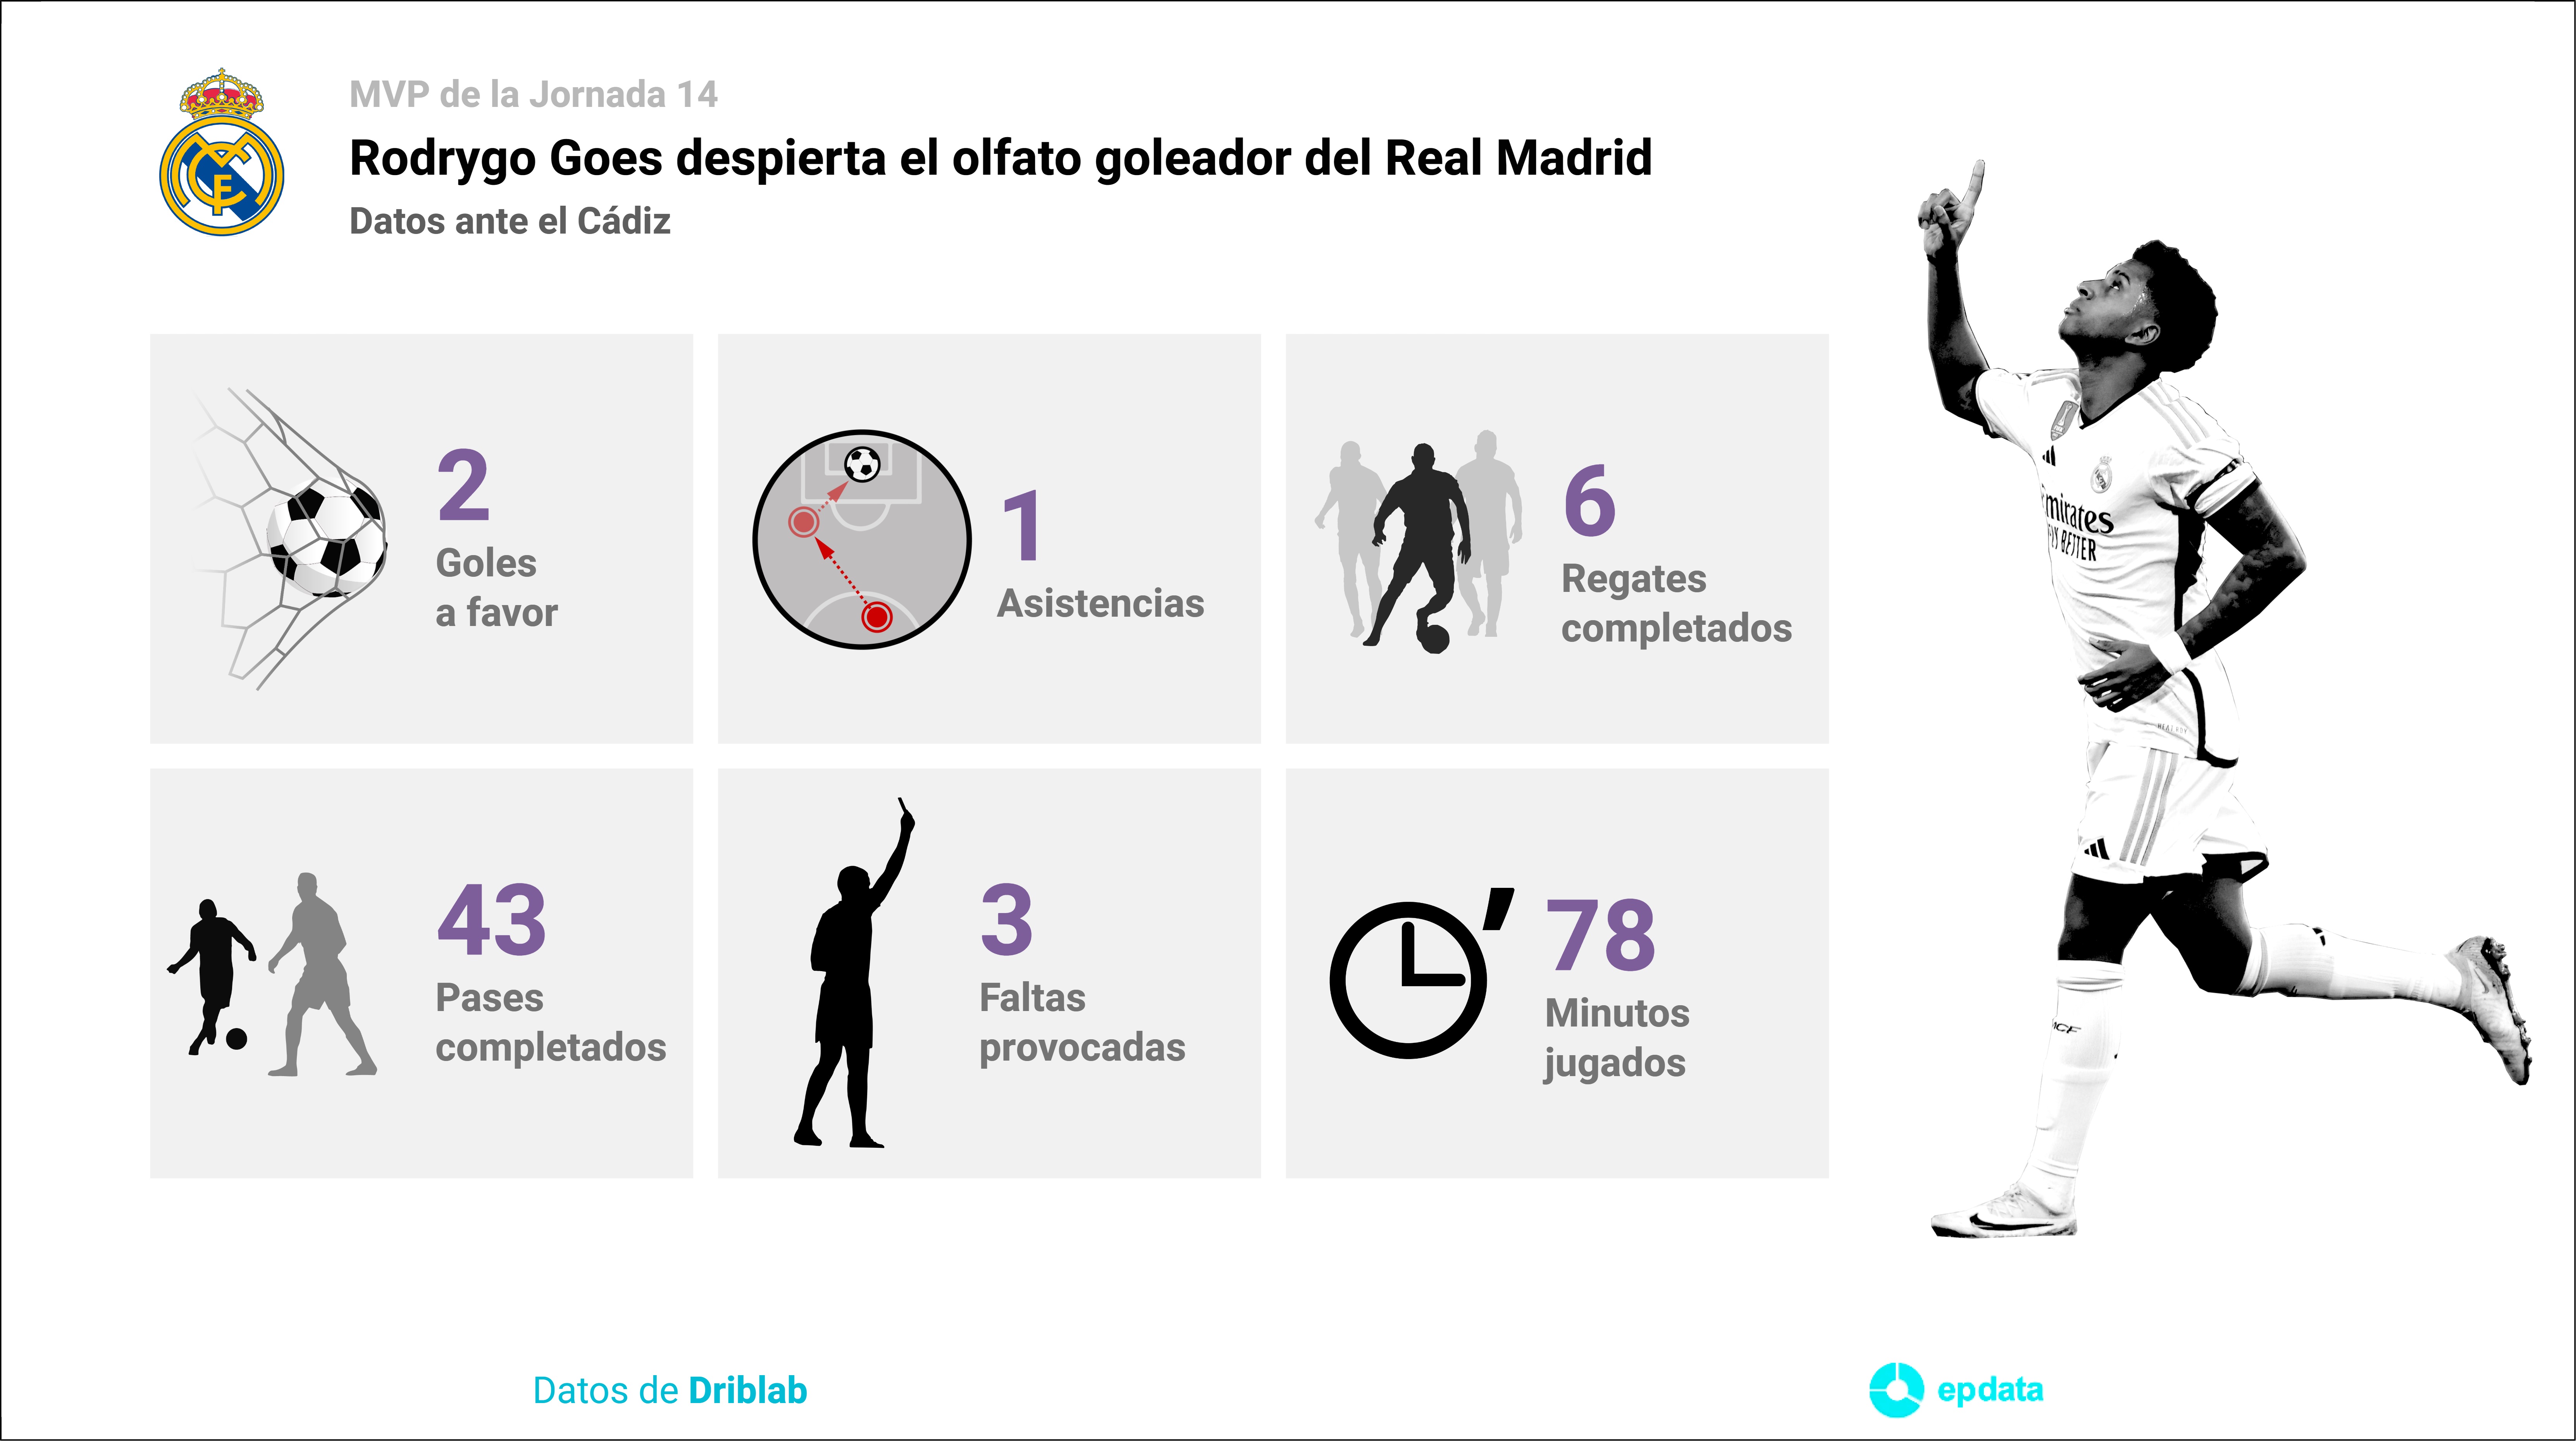 Estadísticas del jugador del Real Madrid Rodrygo Goes durante el partido ante el Cádiz el pasado 26 de noviembre.